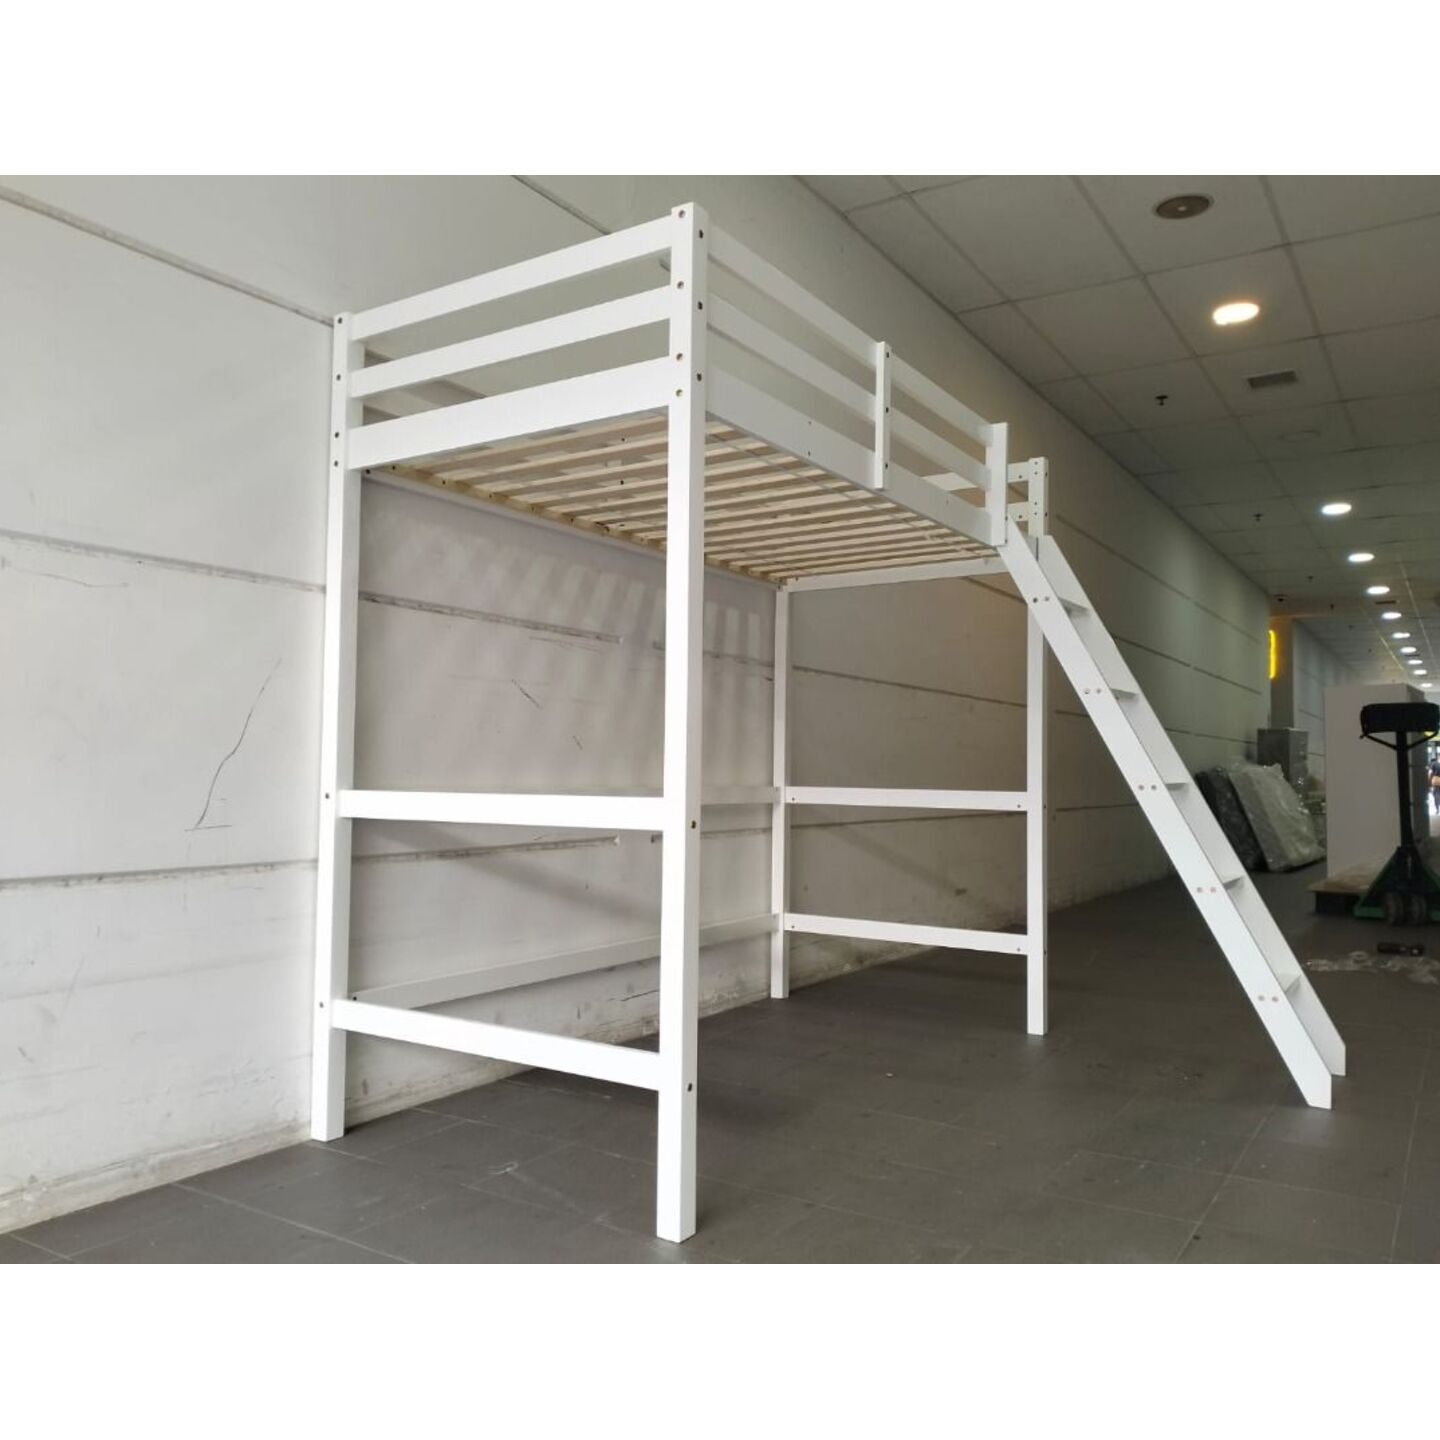 RUZENDA Single Size Wooden Loft Bedframe in WHITE